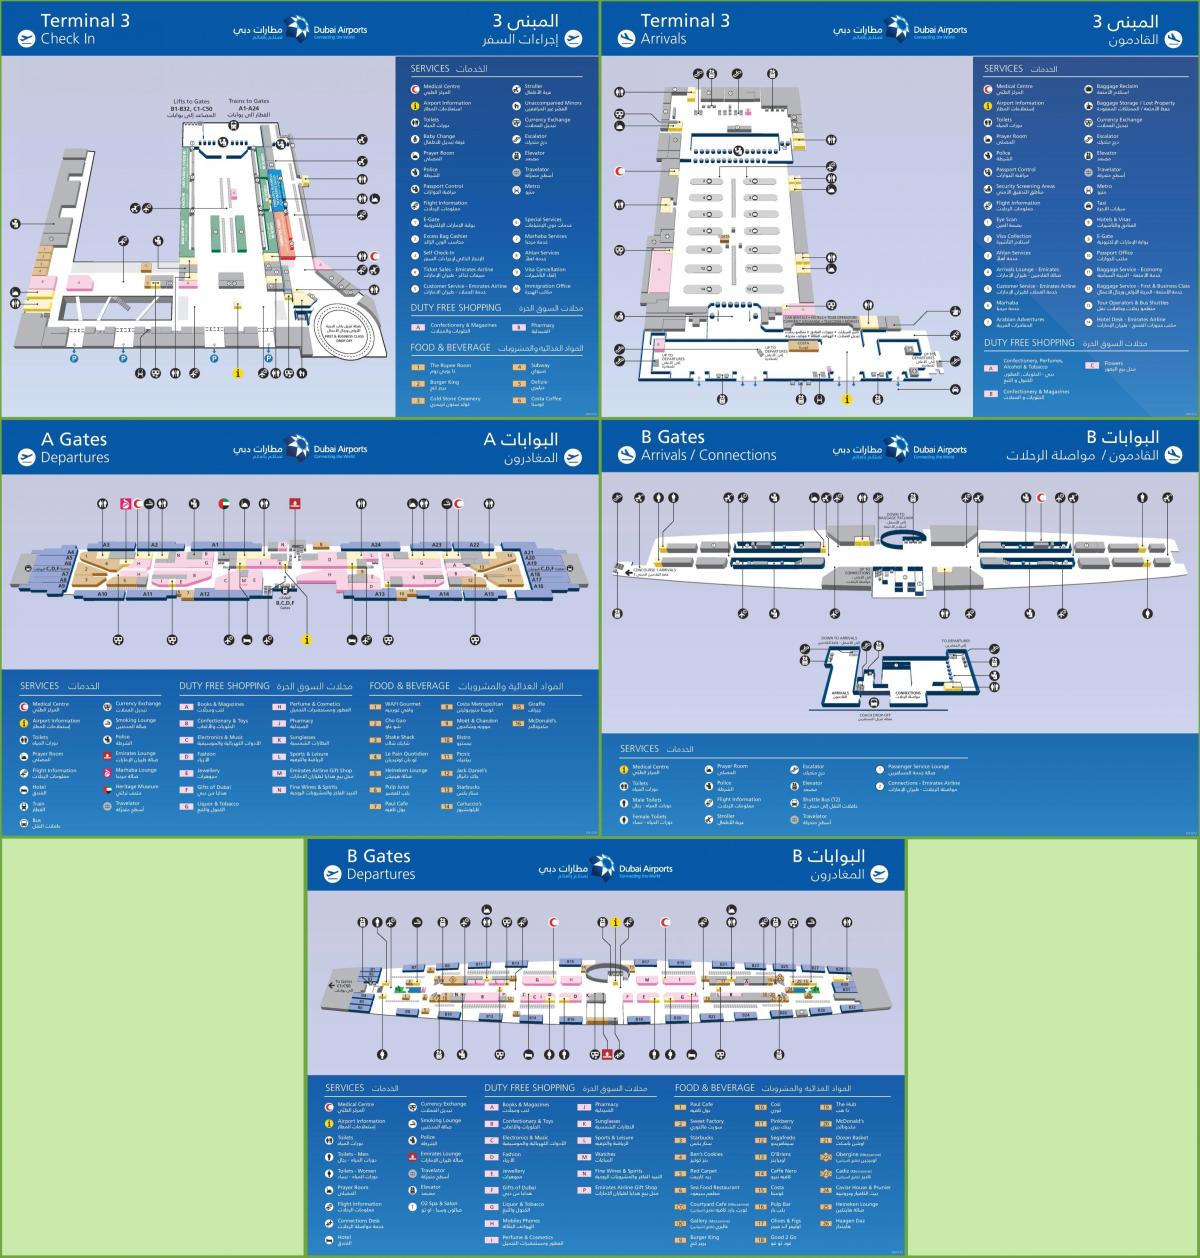 დუბაის საერთაშორისო აეროპორტის ტერმინალის 3 რუკა